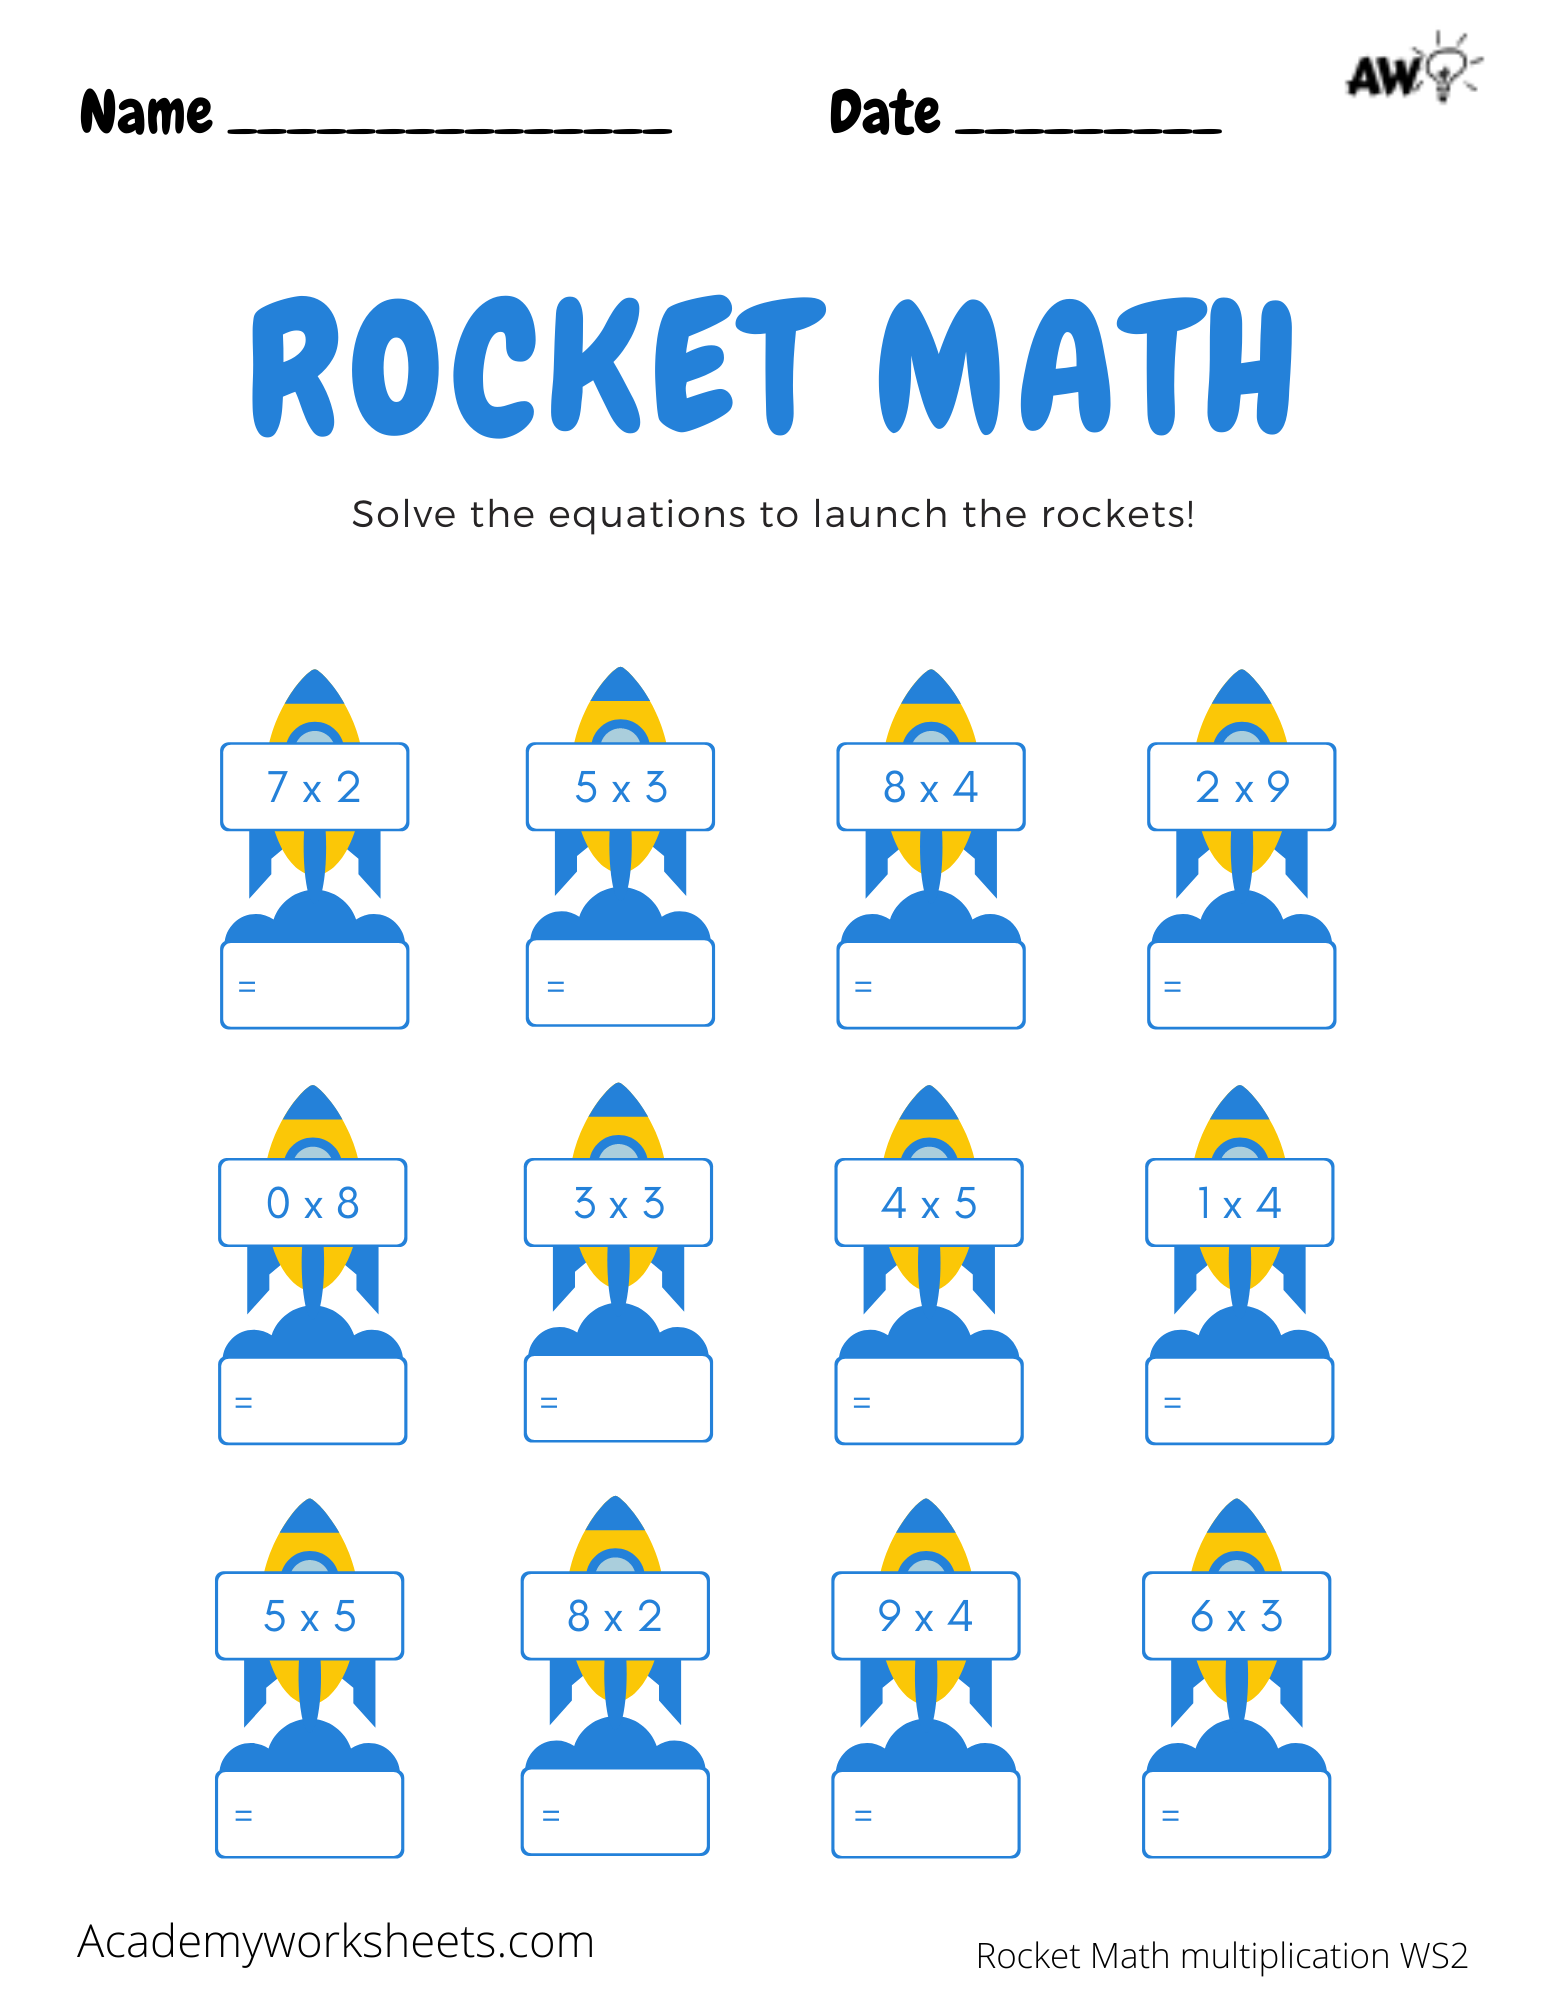 rocket-math-ms-lins-first-grade-class-9-best-images-of-rocket-math-worksheets-rocket-math